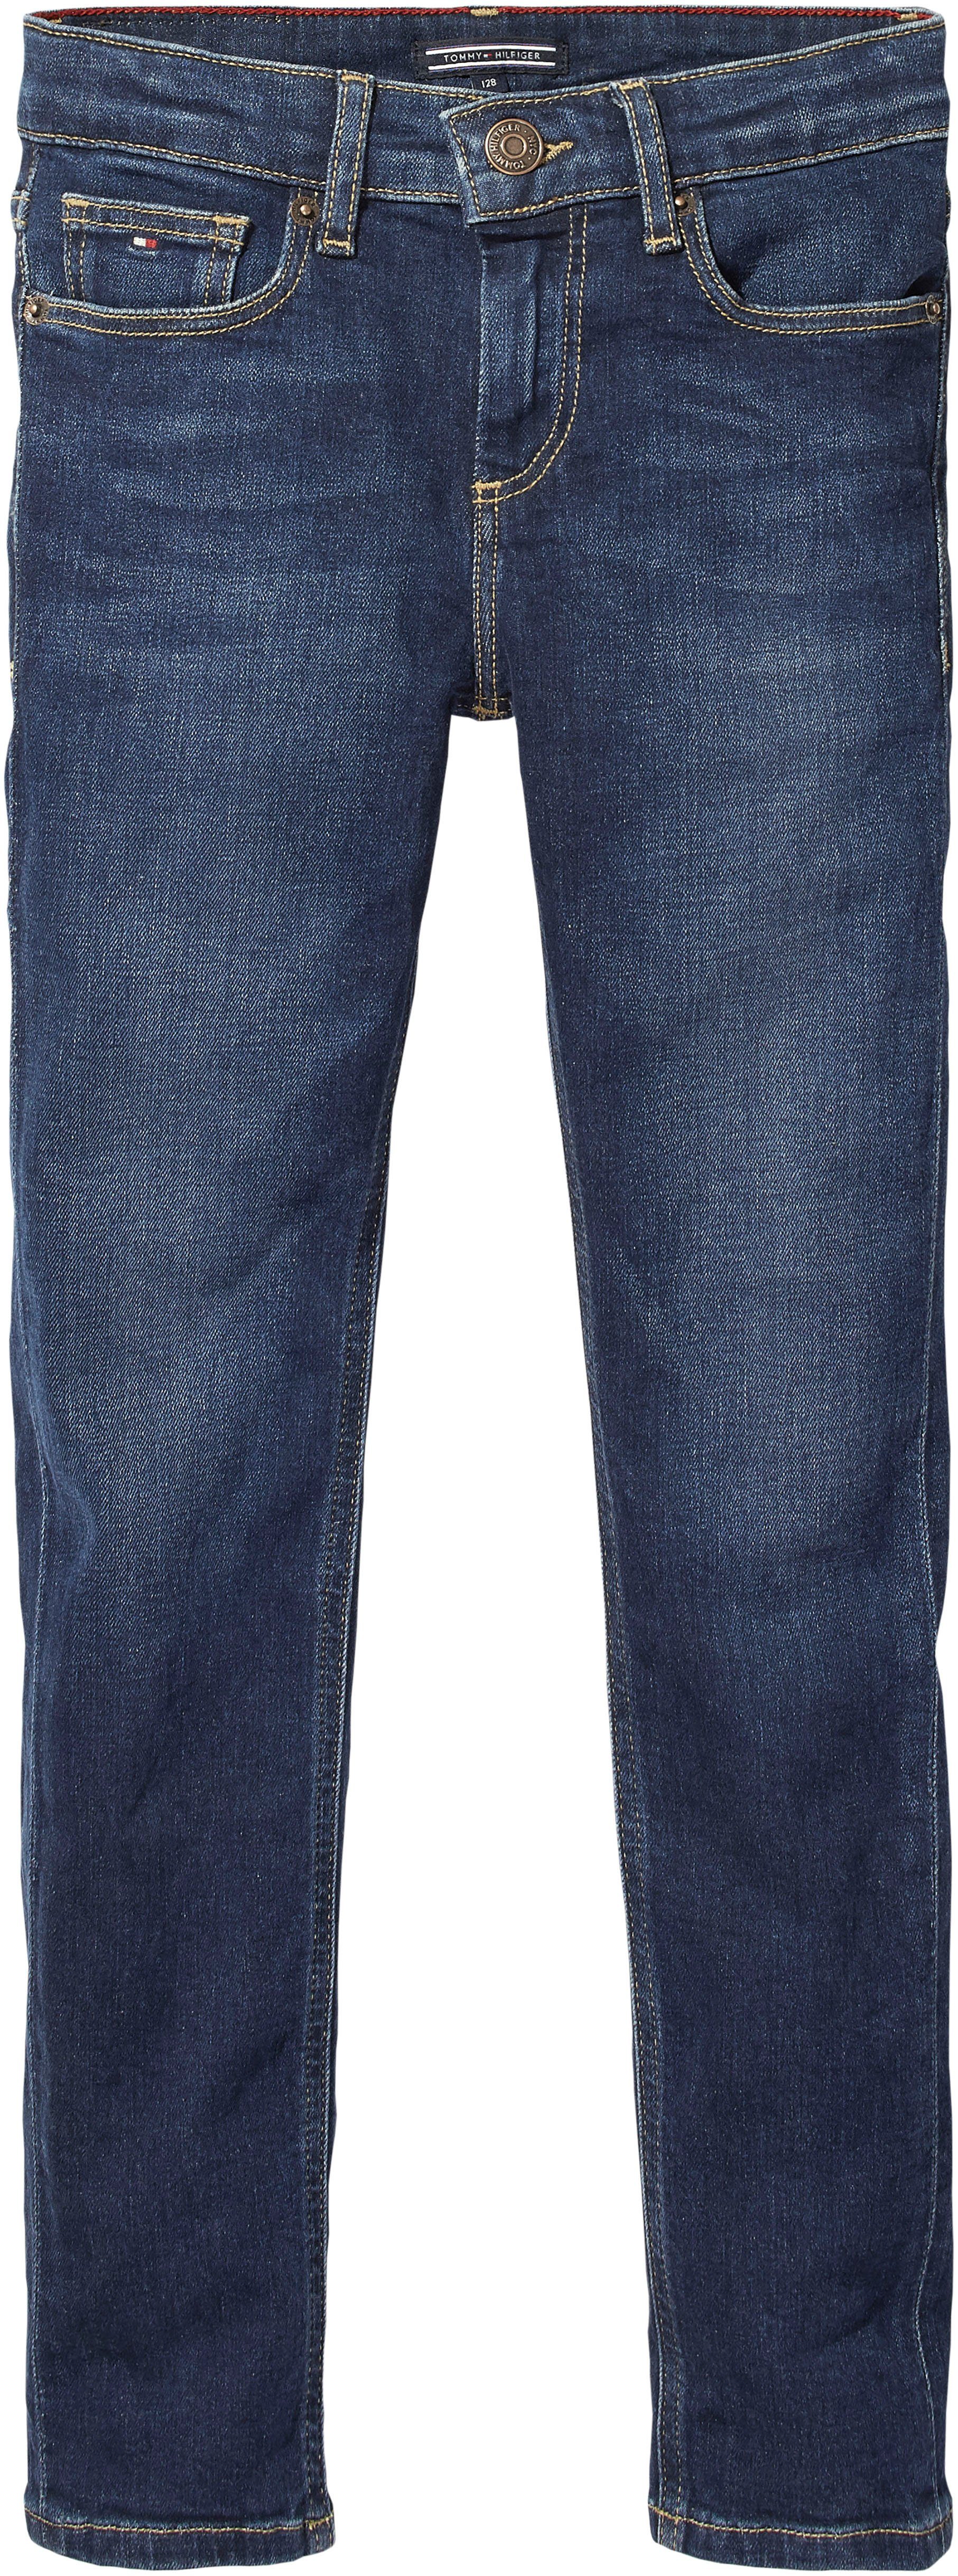 Tommy Hilfiger Stretch-Jeans DARK SCANTON